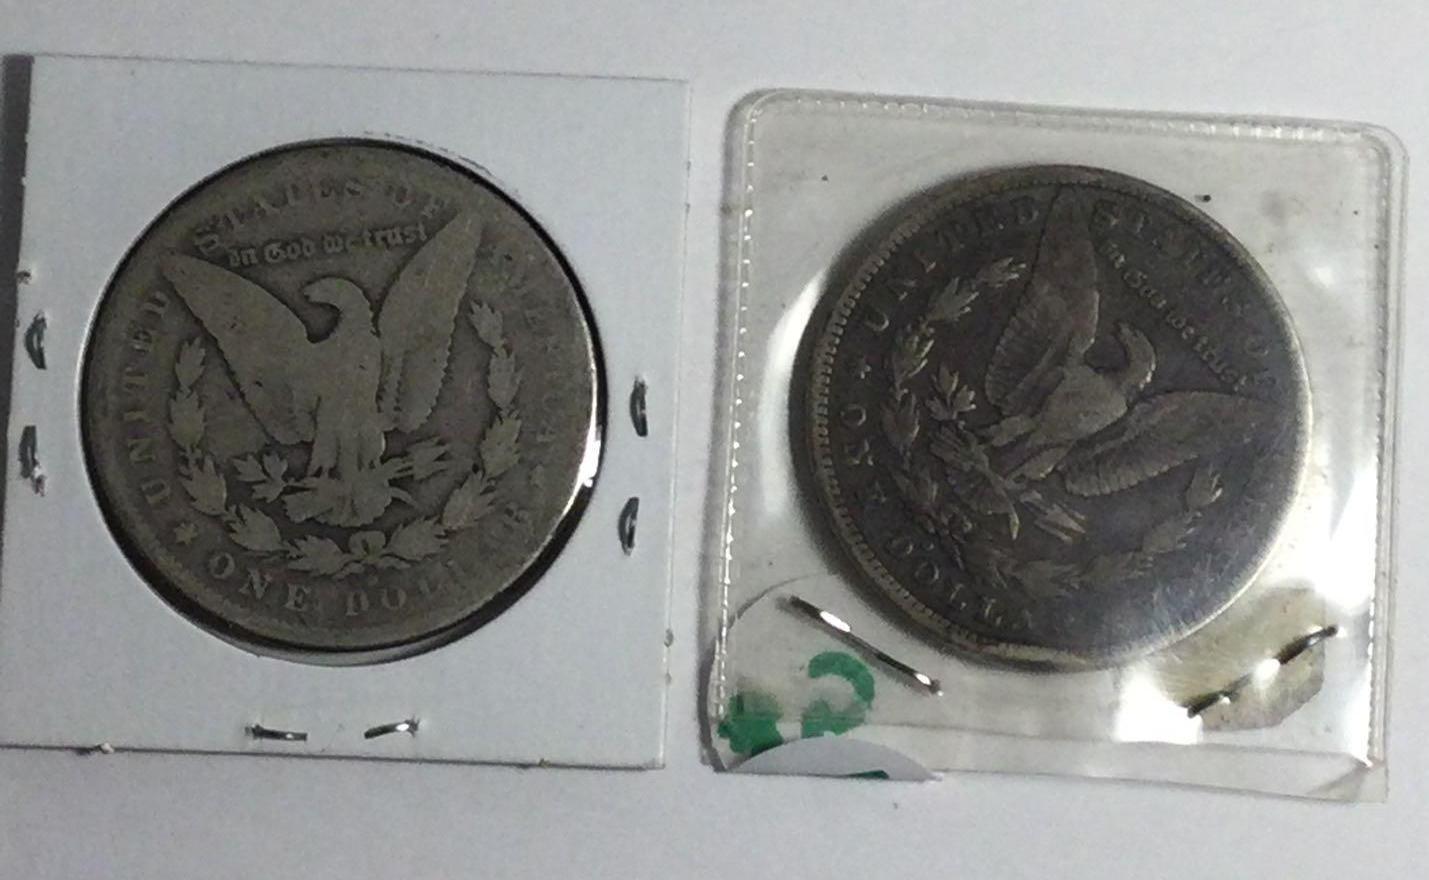 Two 1880-O Morgan Silver Dollars